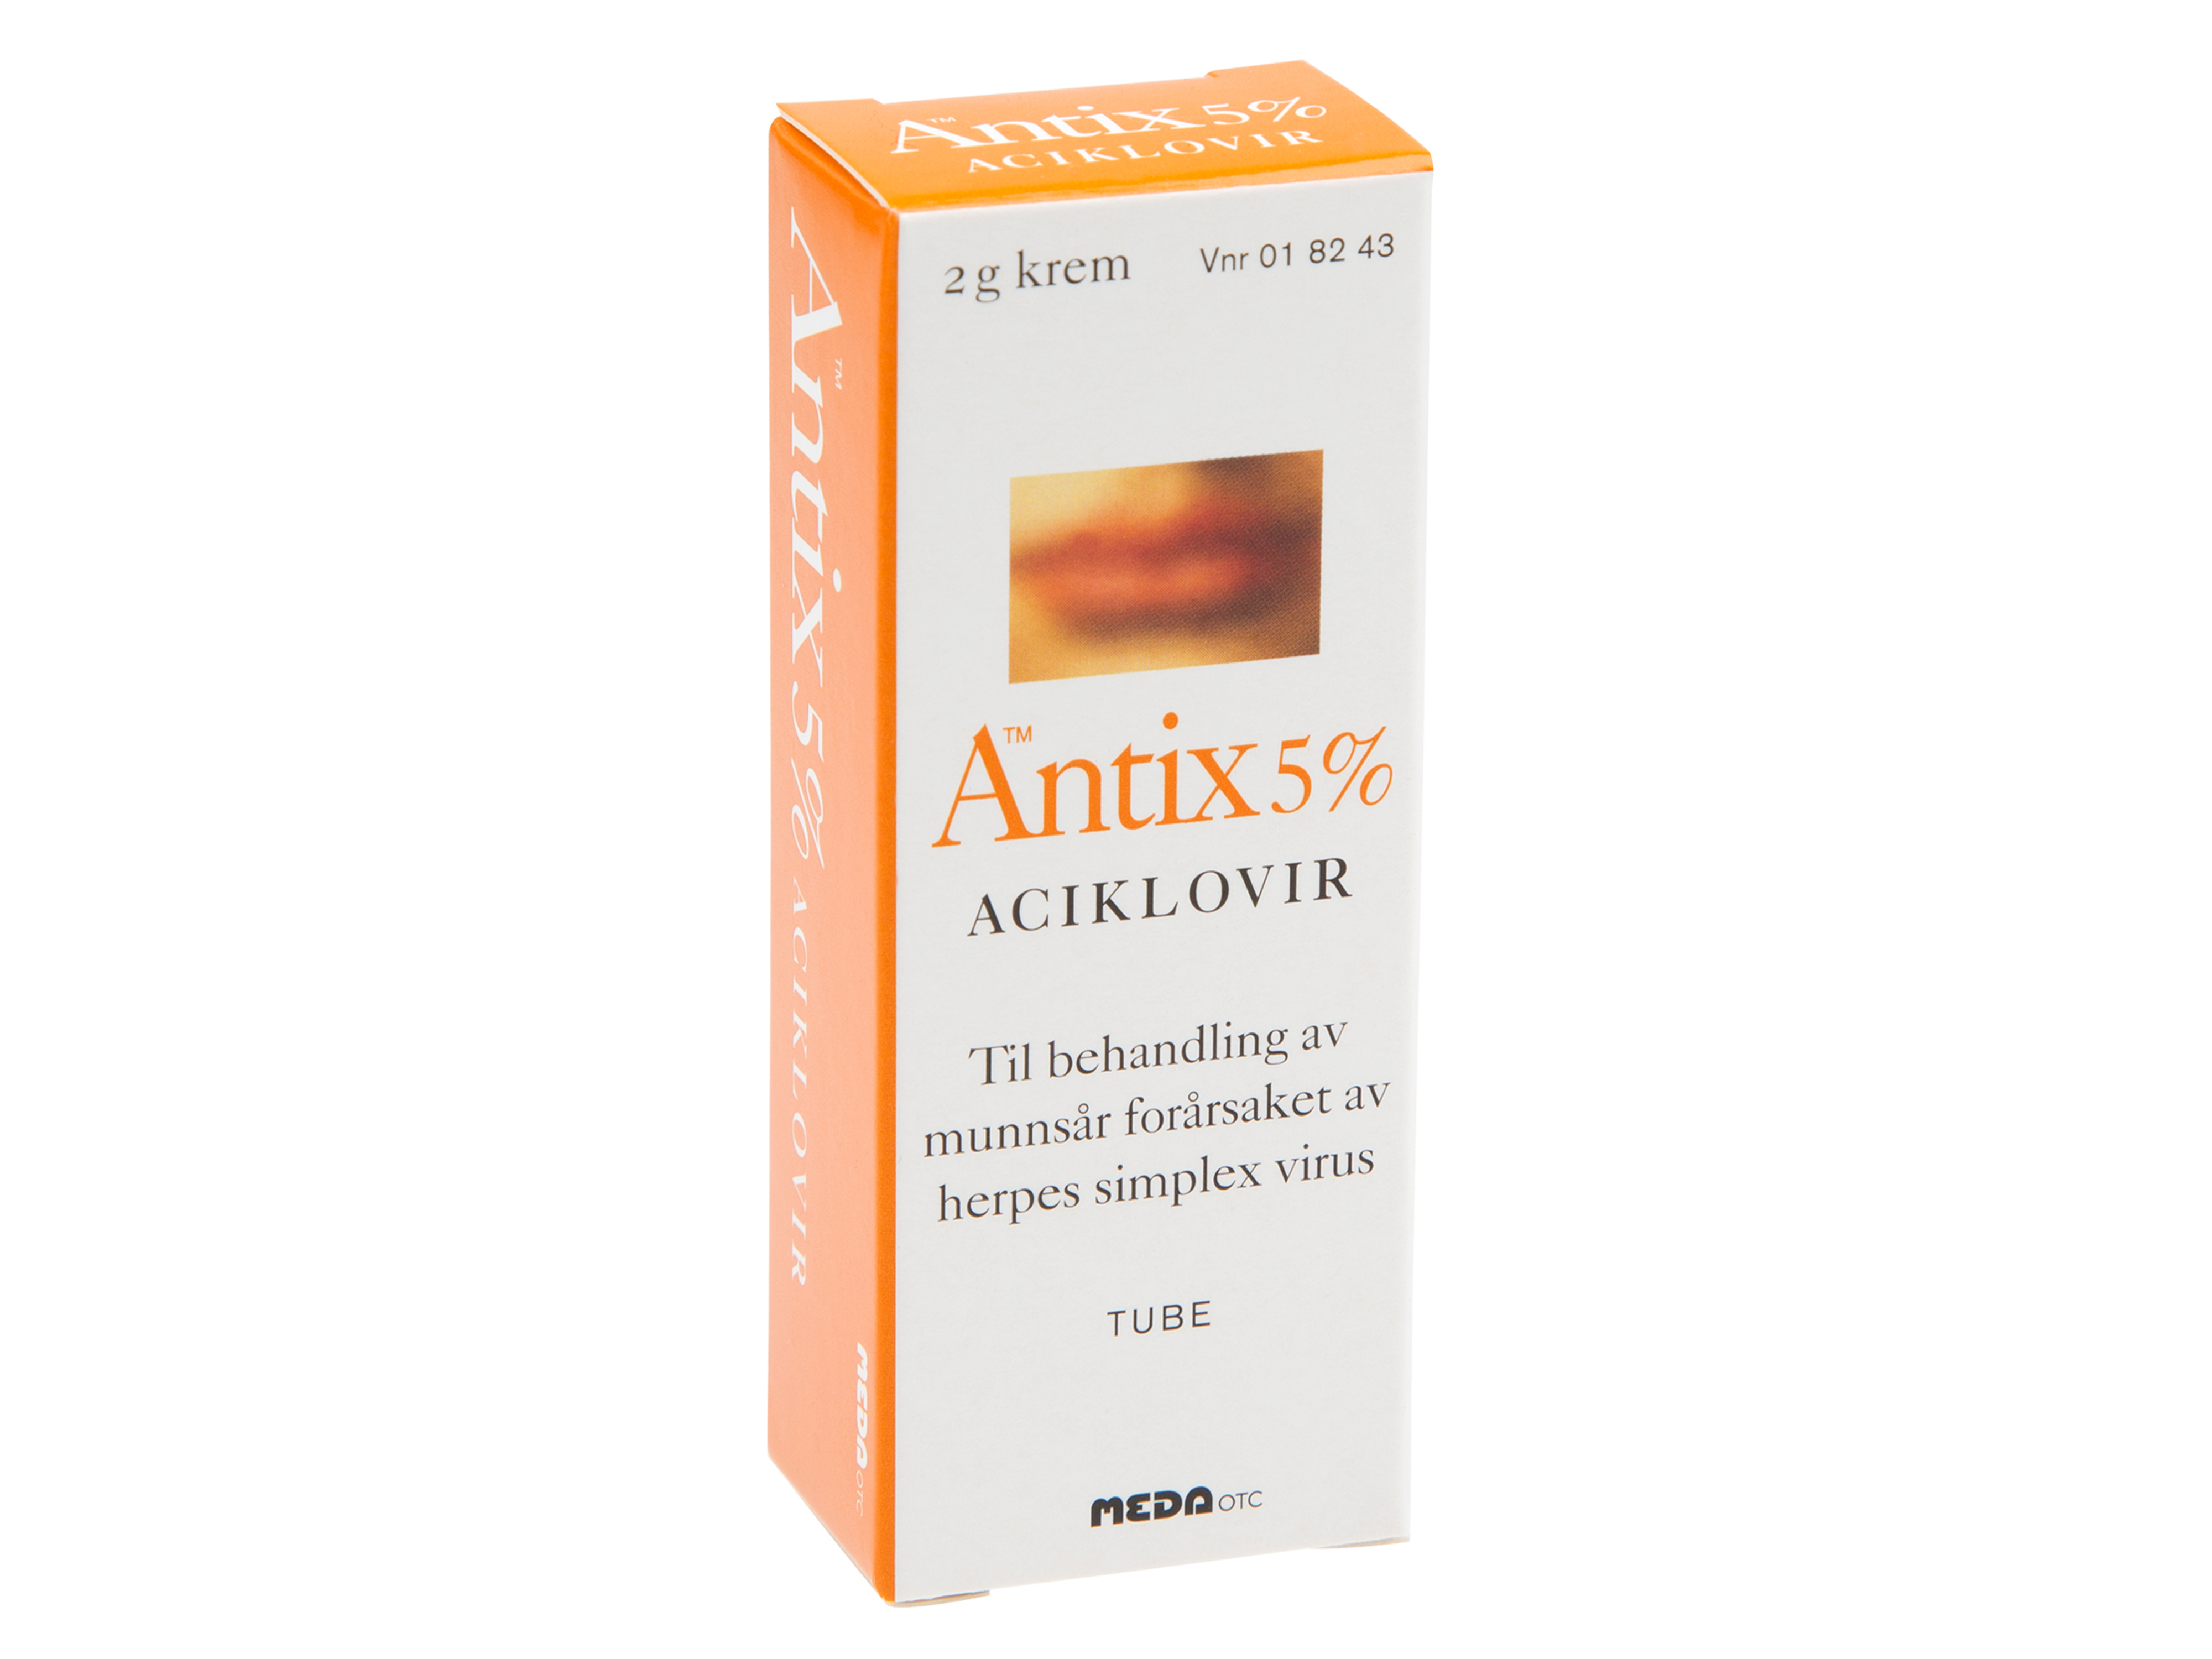 Antix Krem 5 %, 2 gram